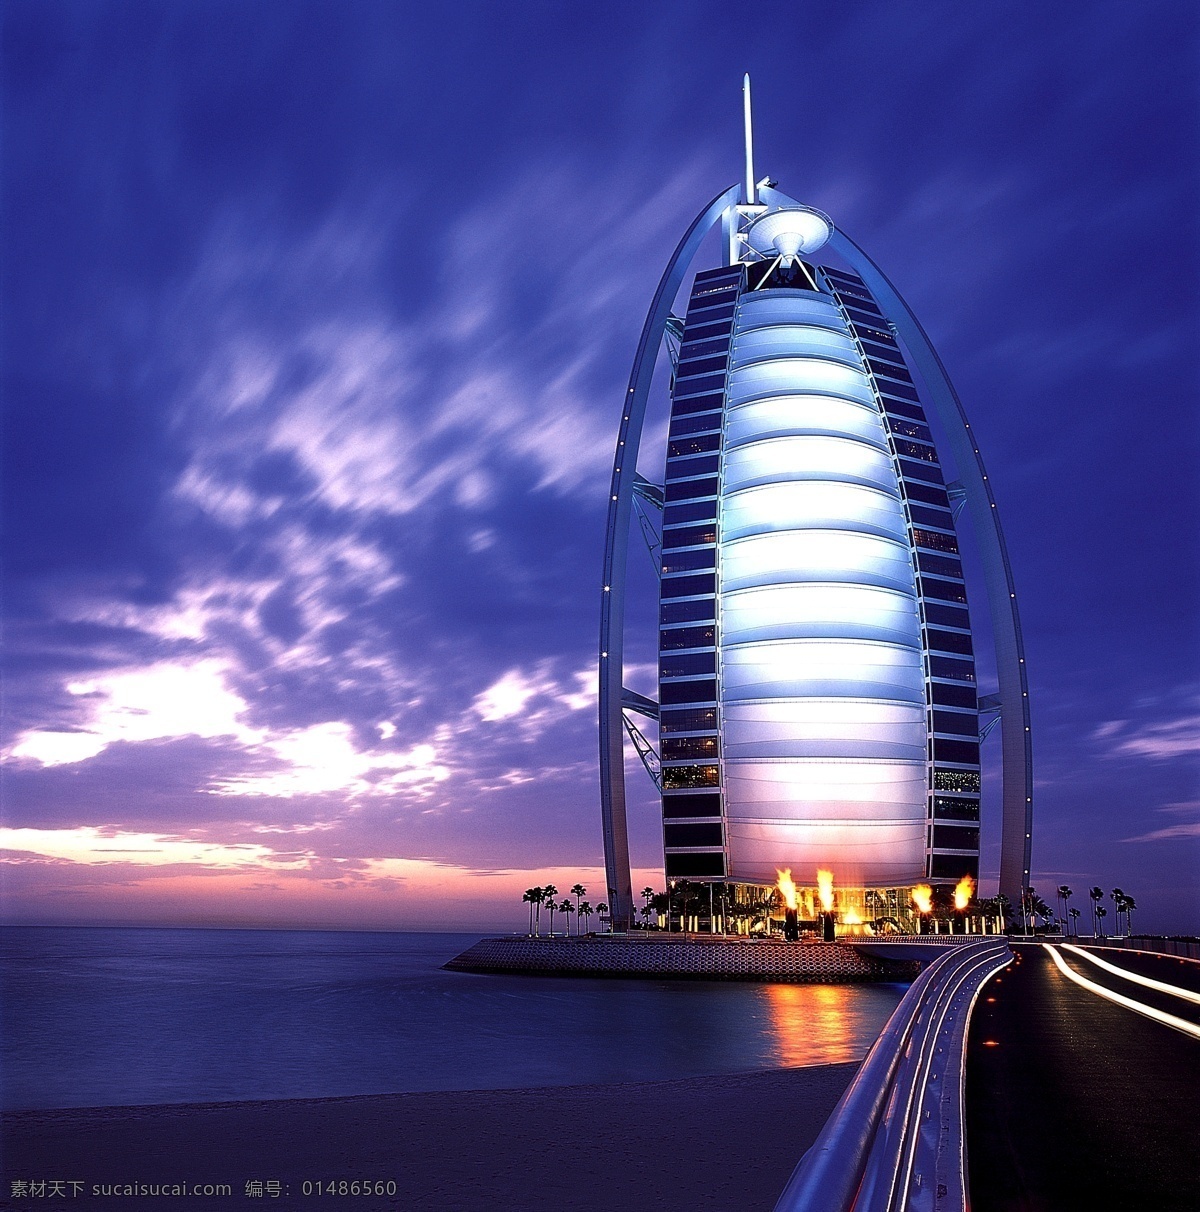 迪拜免费下载 迪拜 风景 美图 高精摄影